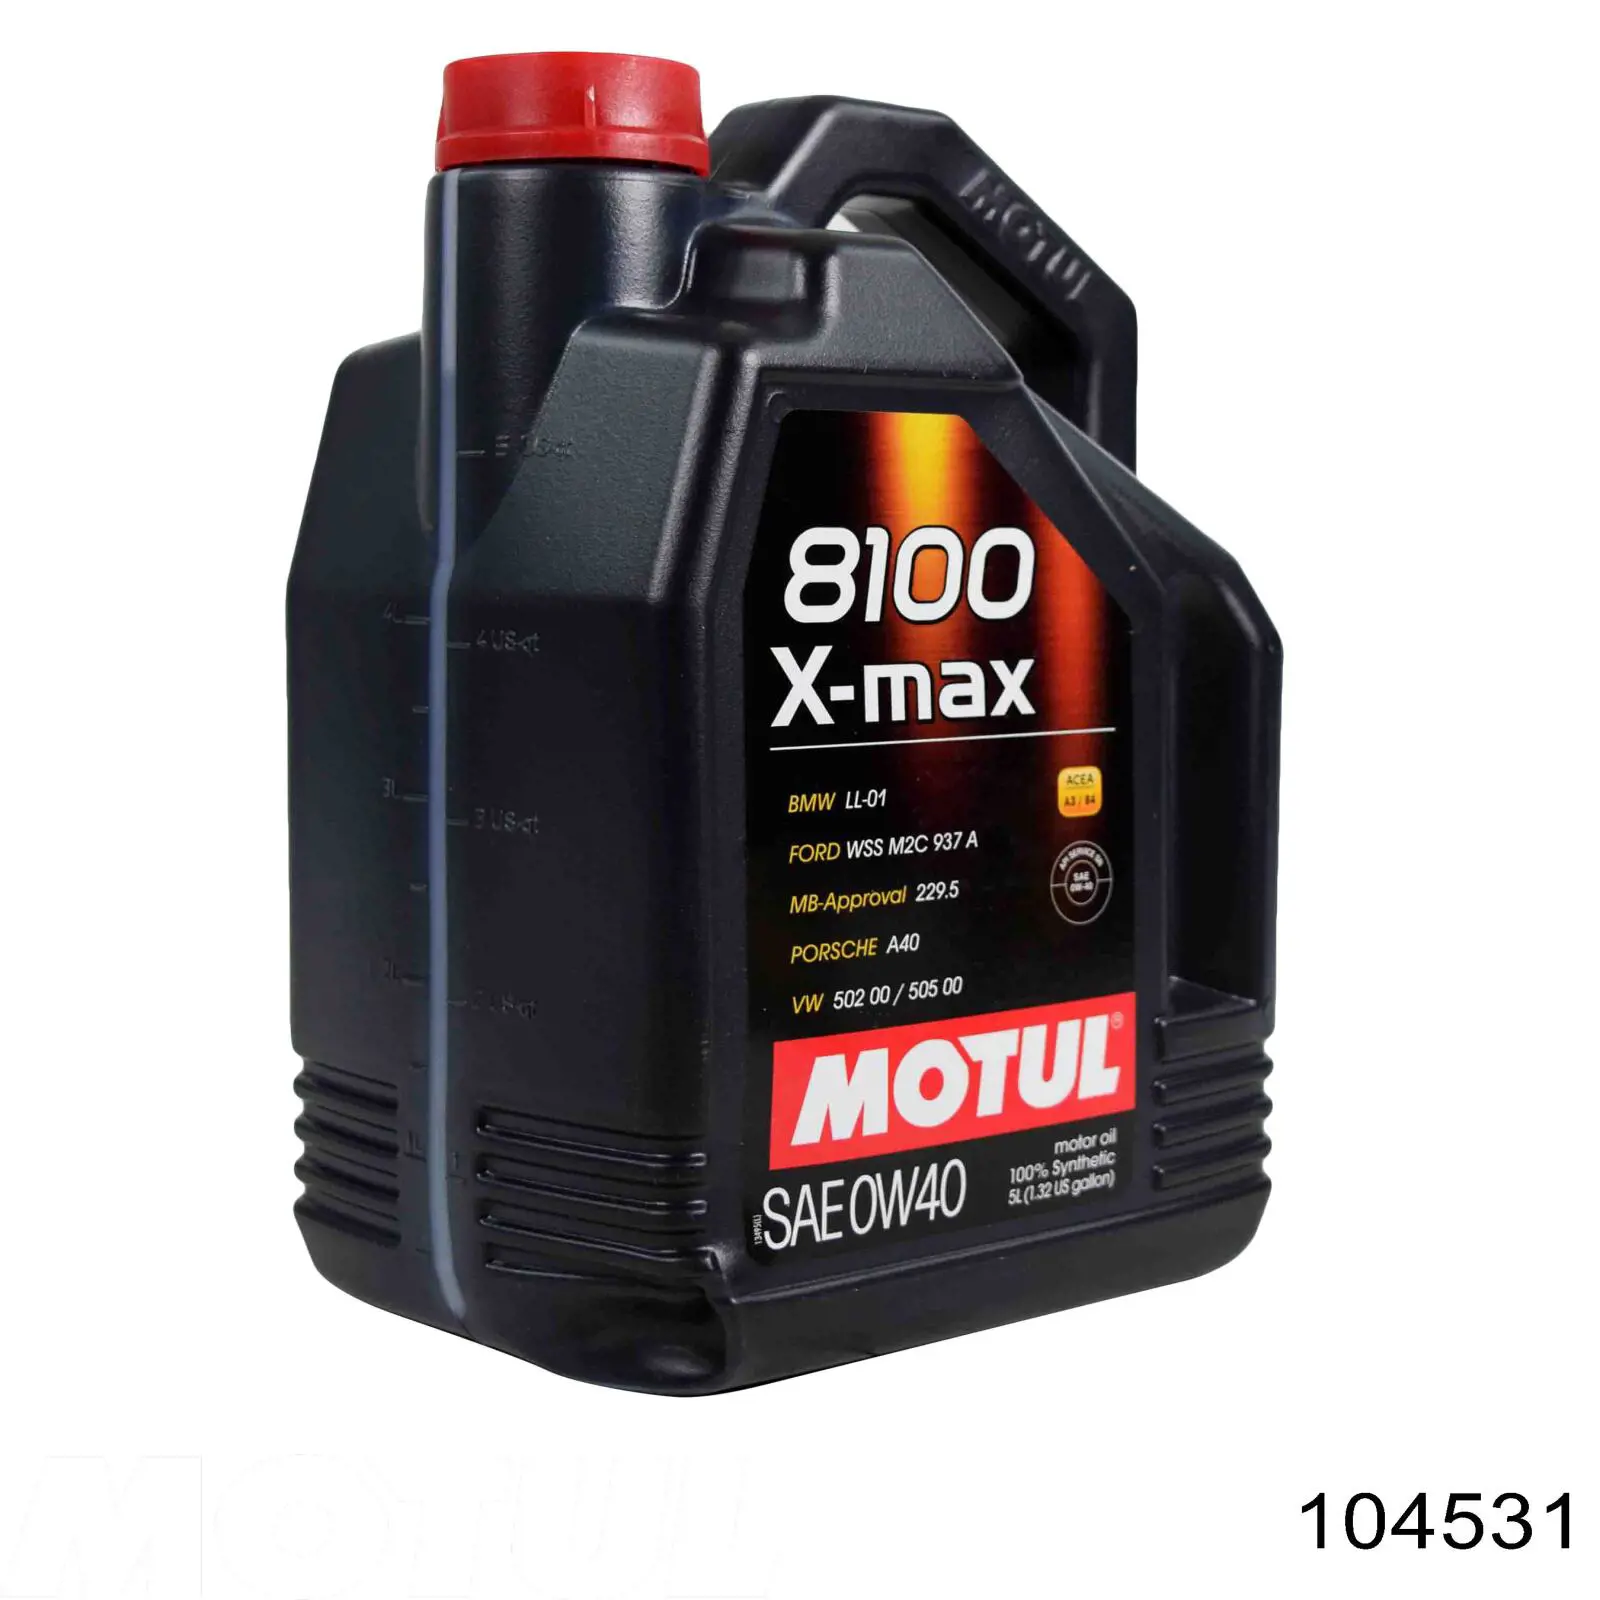 Motul 8100 X-max Sintético 1 L (104531)